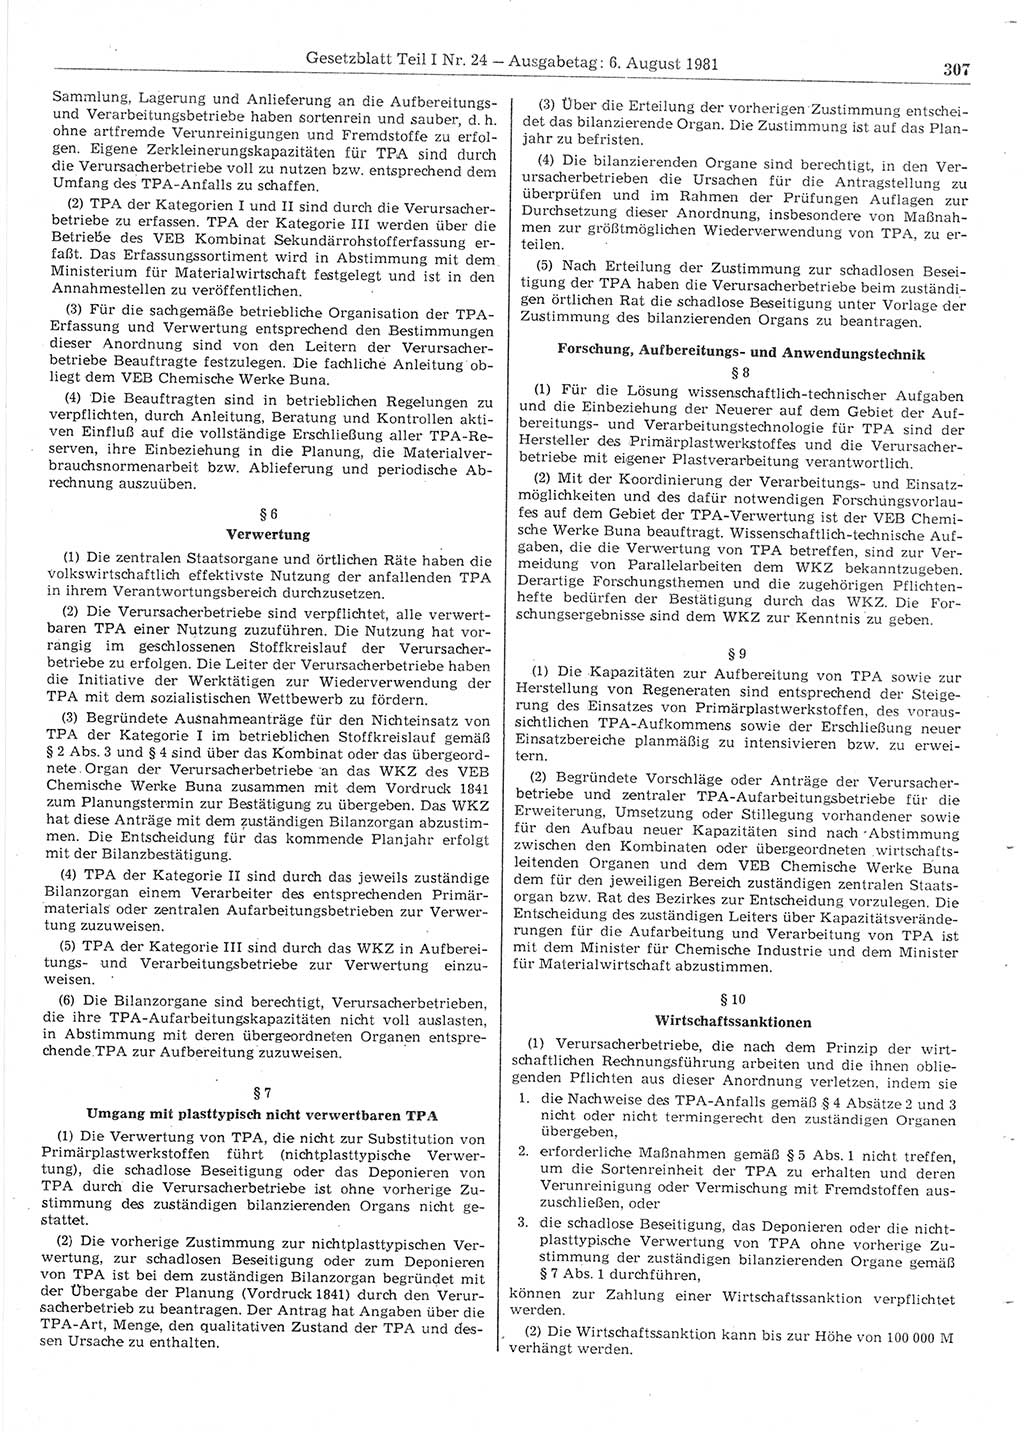 Gesetzblatt (GBl.) der Deutschen Demokratischen Republik (DDR) Teil Ⅰ 1981, Seite 307 (GBl. DDR Ⅰ 1981, S. 307)